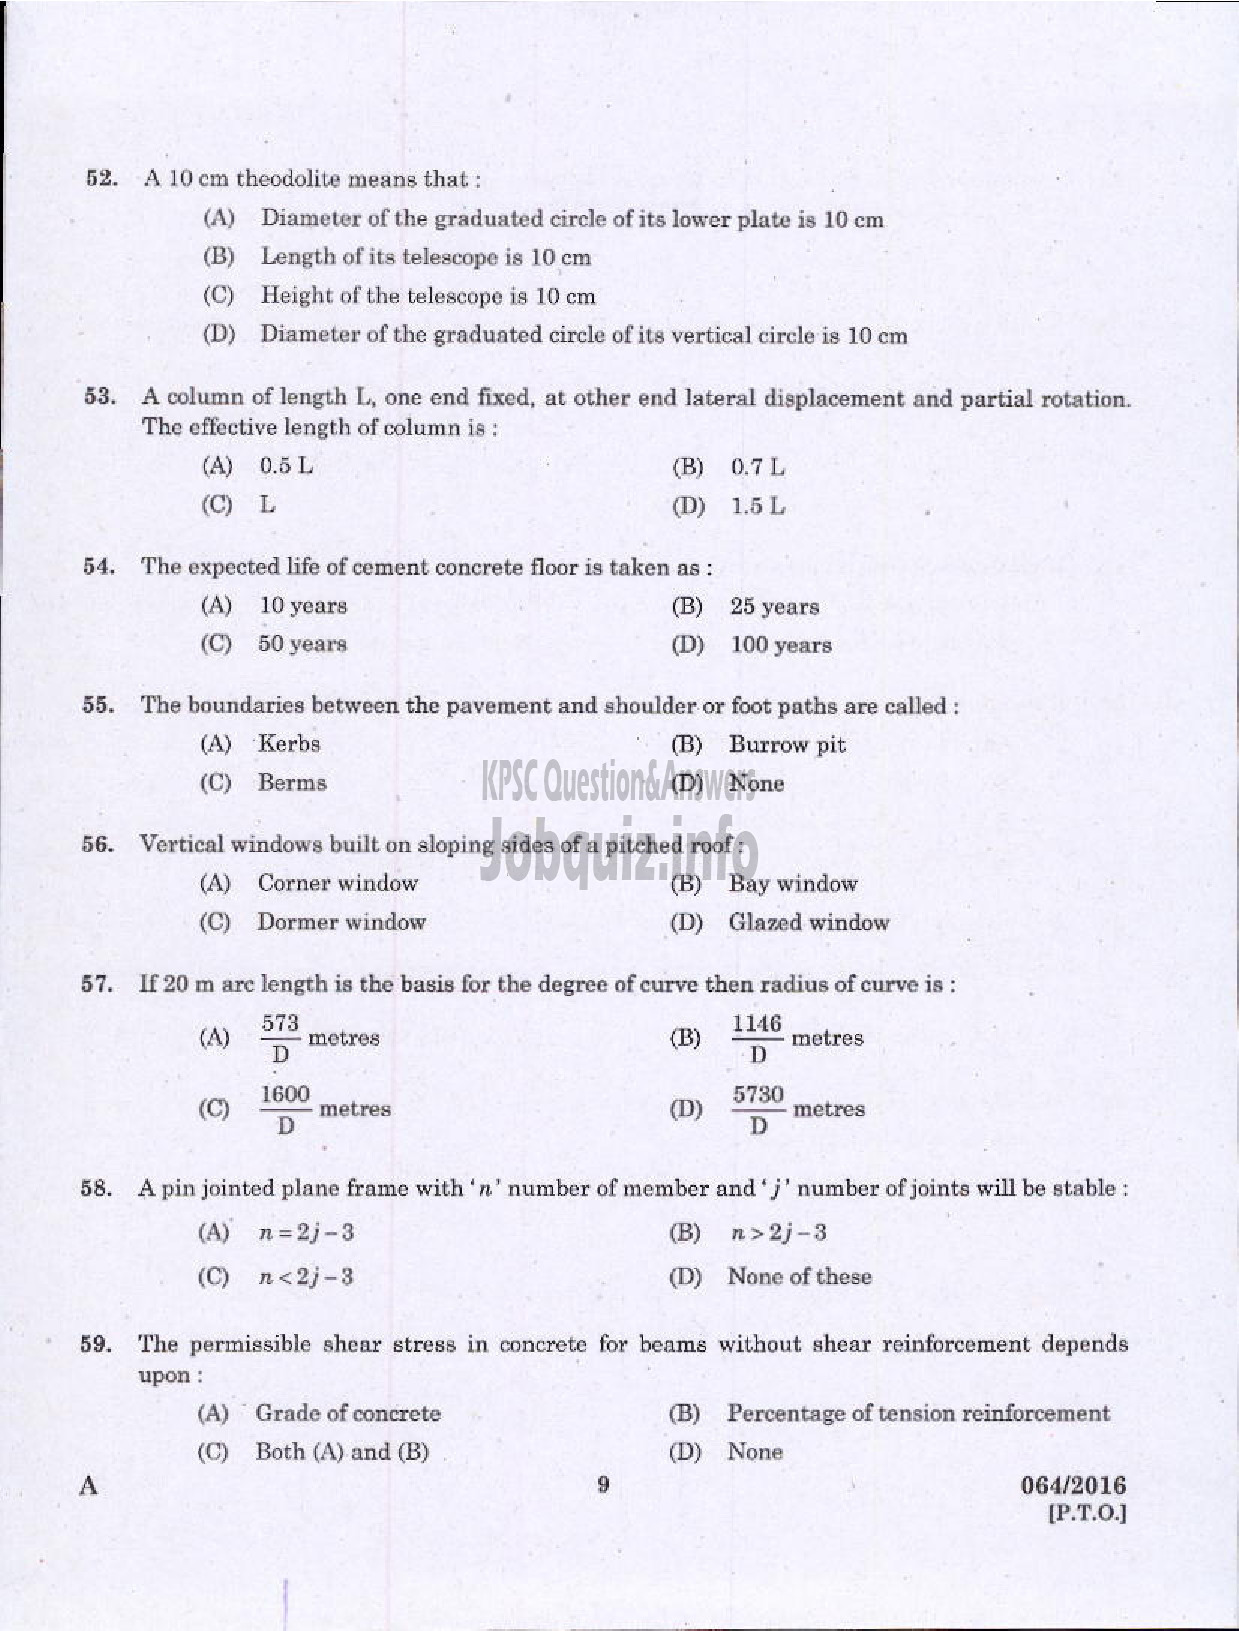 Kerala PSC Question Paper - VOCATIONAL TEACHER CIVIL CONSTRUCTION AND MAINTENANCE VHSE-7